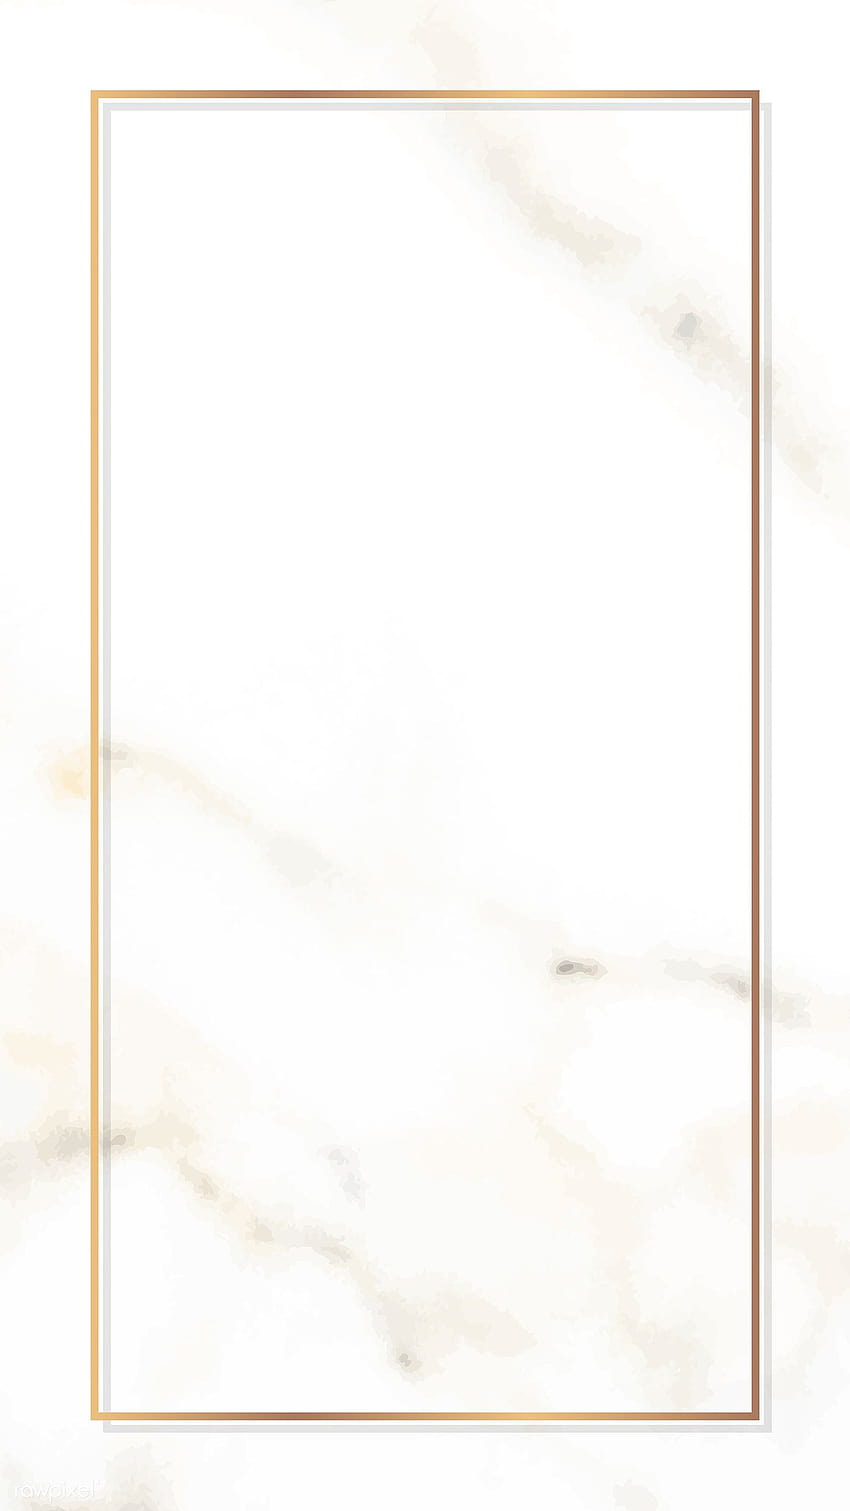 Marco dorado rectangular en un vector de mármol blanco, borde dorado fondo de pantalla del teléfono